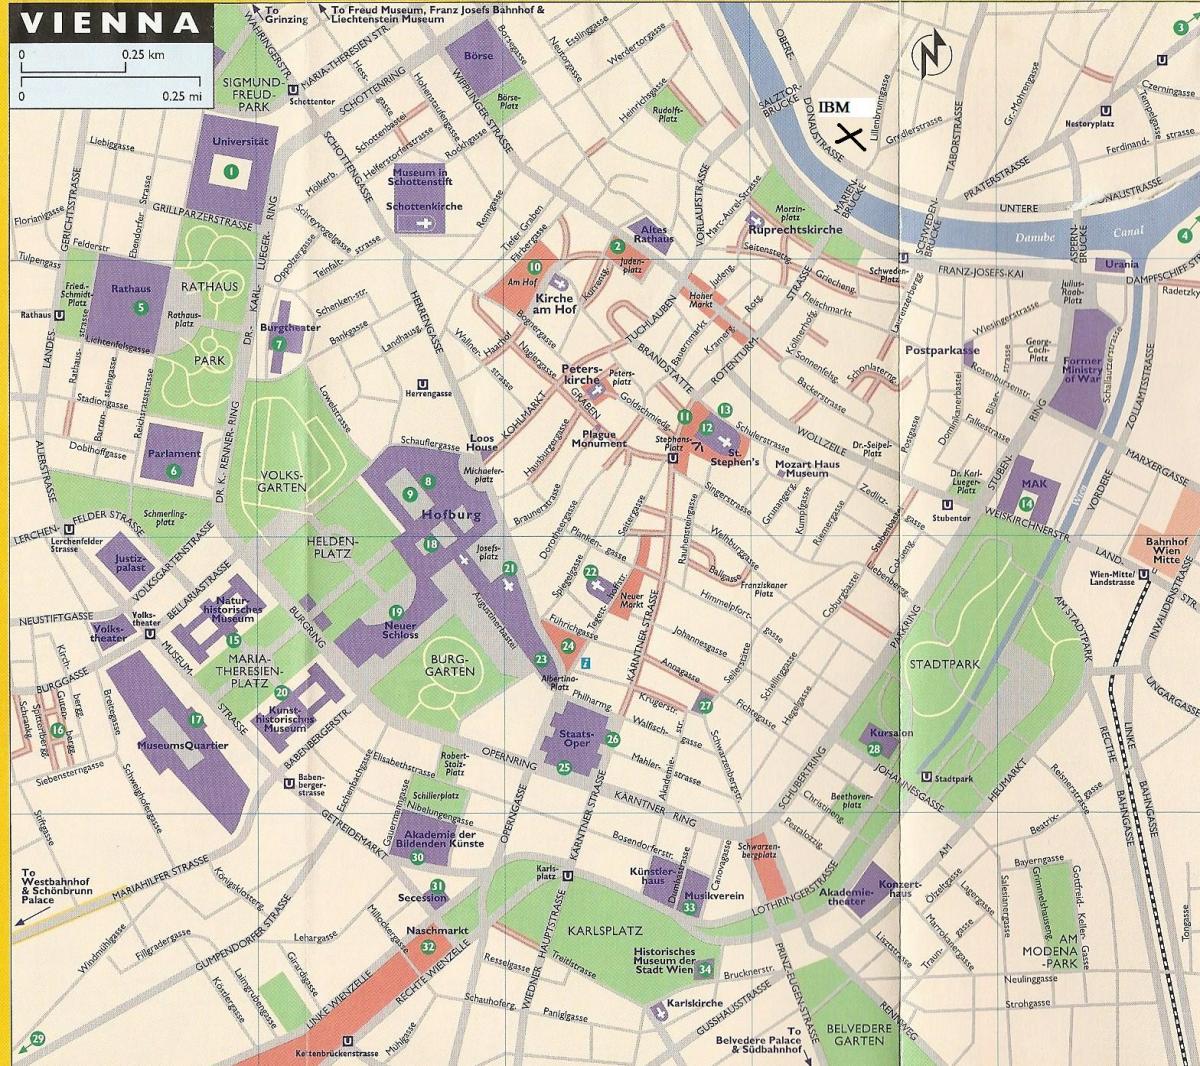 Mapa prodavnicama u Beču 